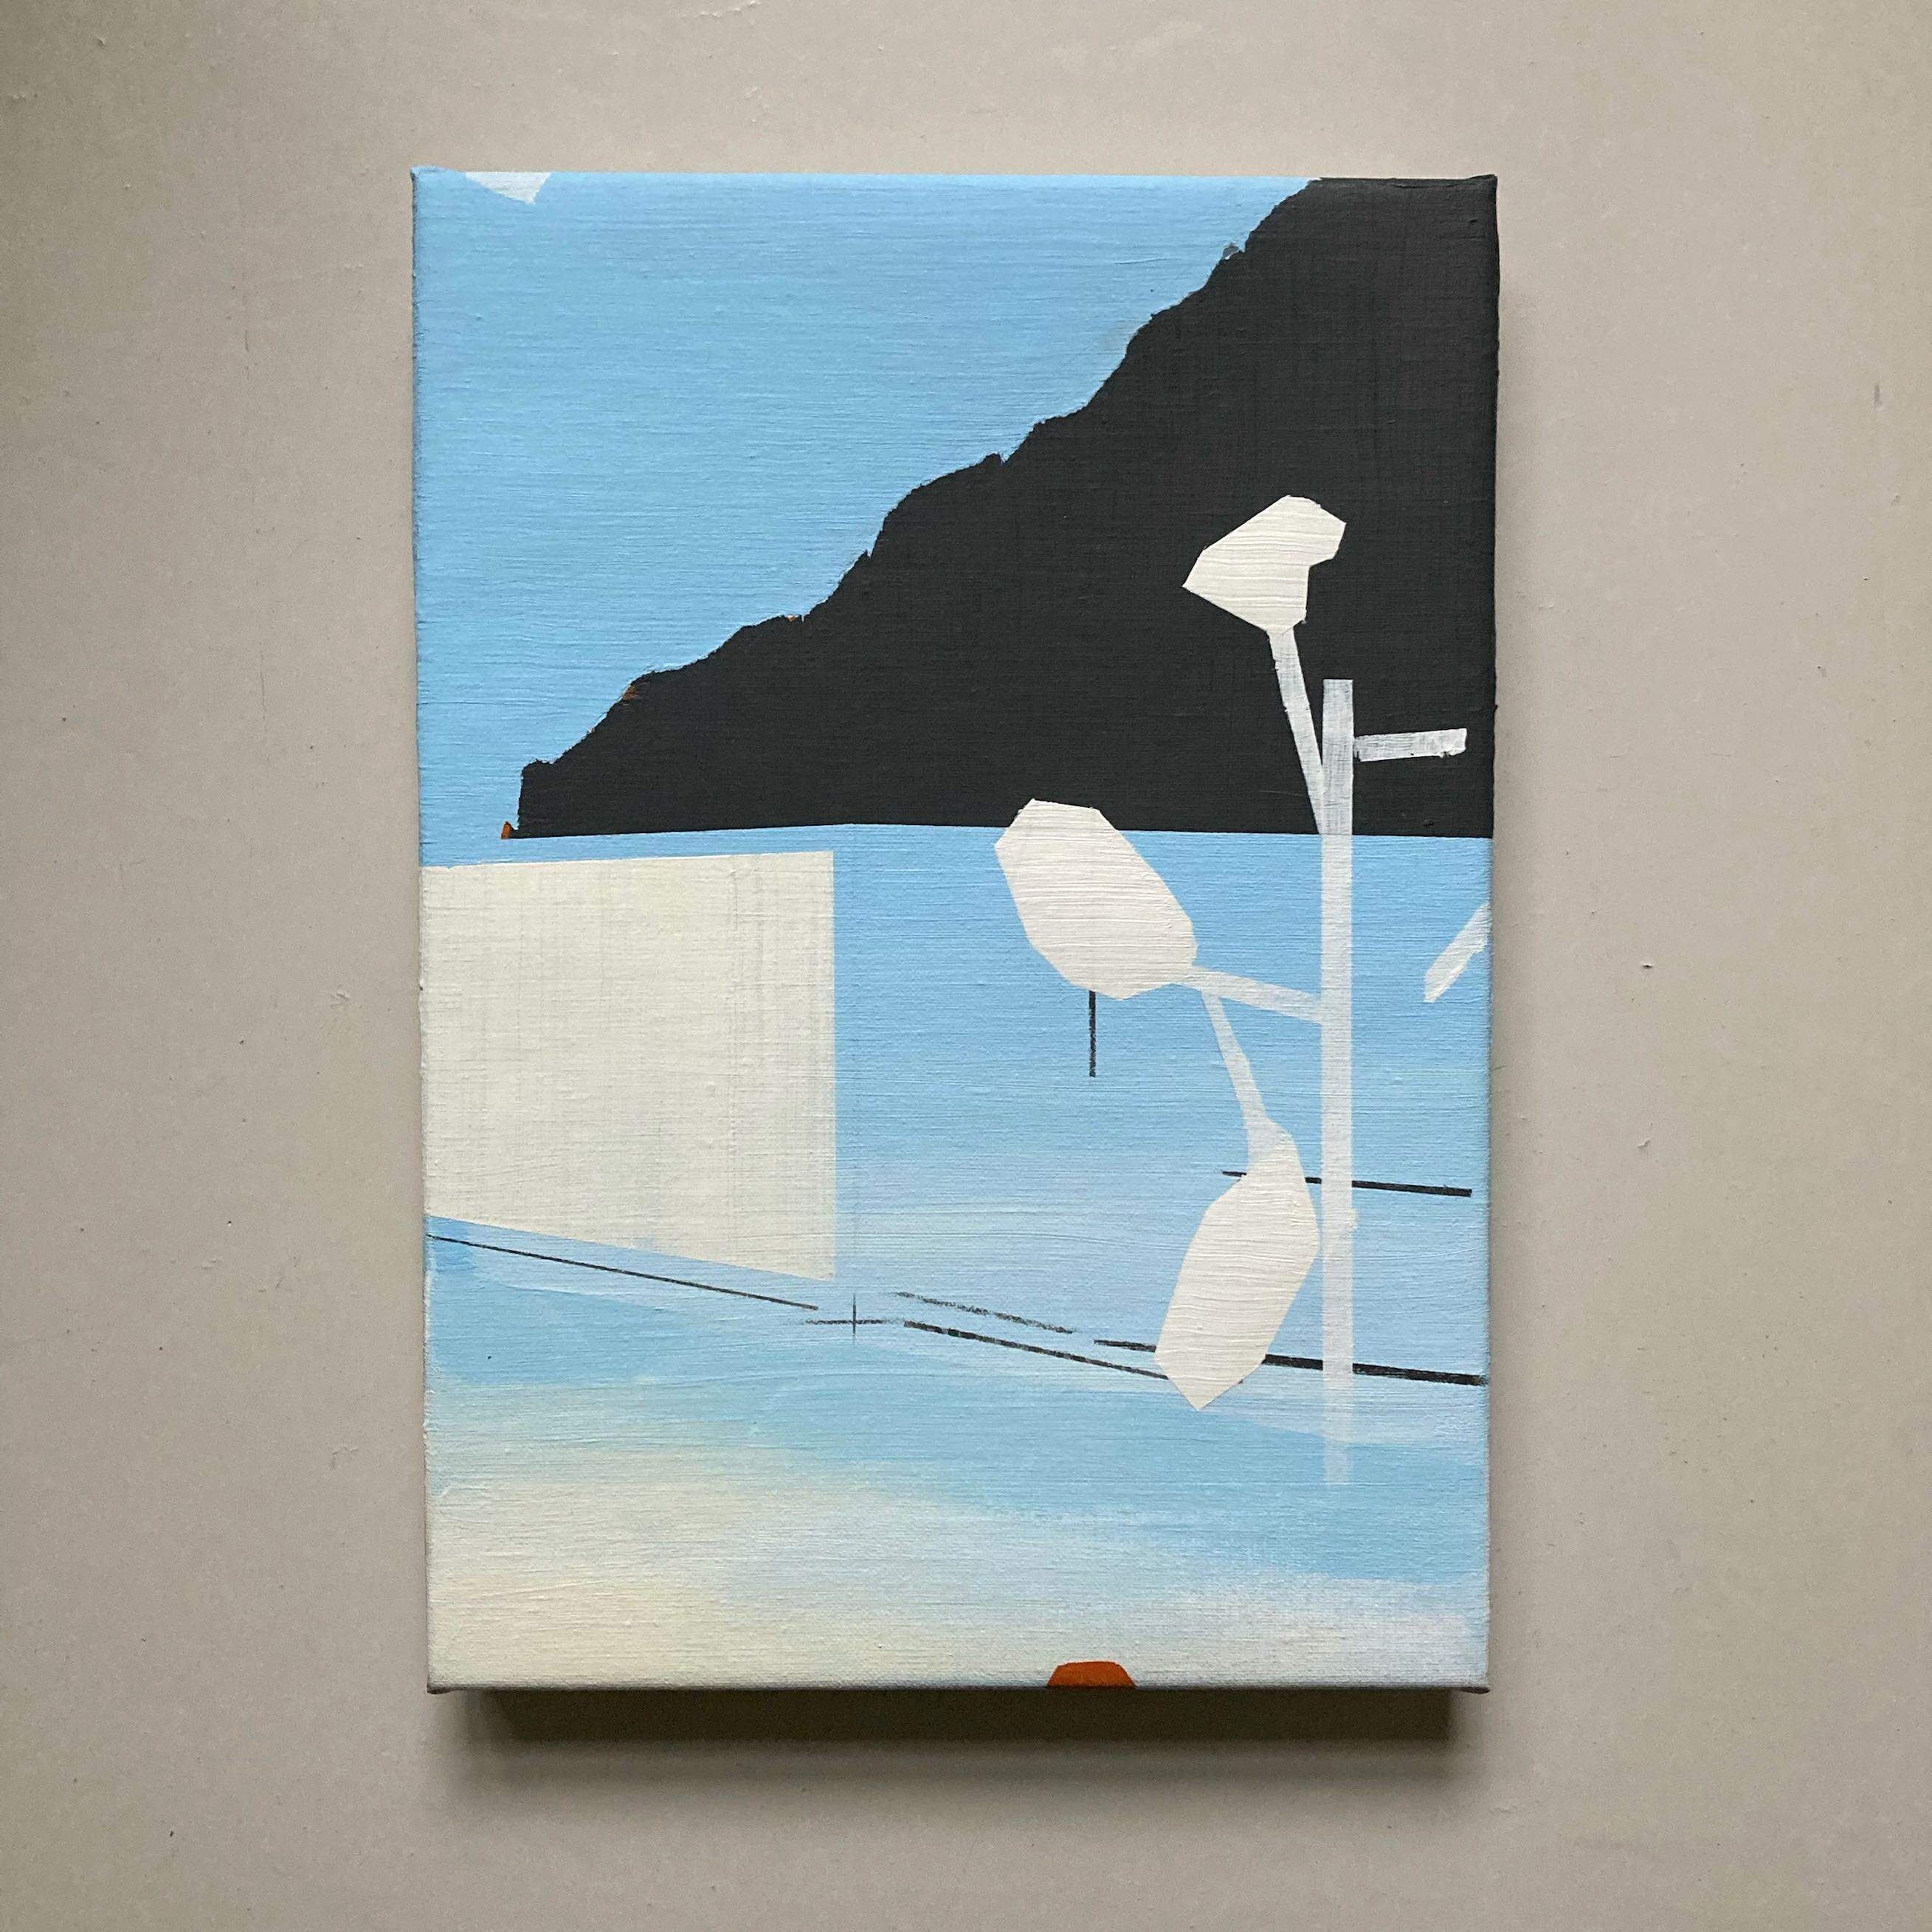 'property', 25 x 35 cm, acrylics on canvas, 2022